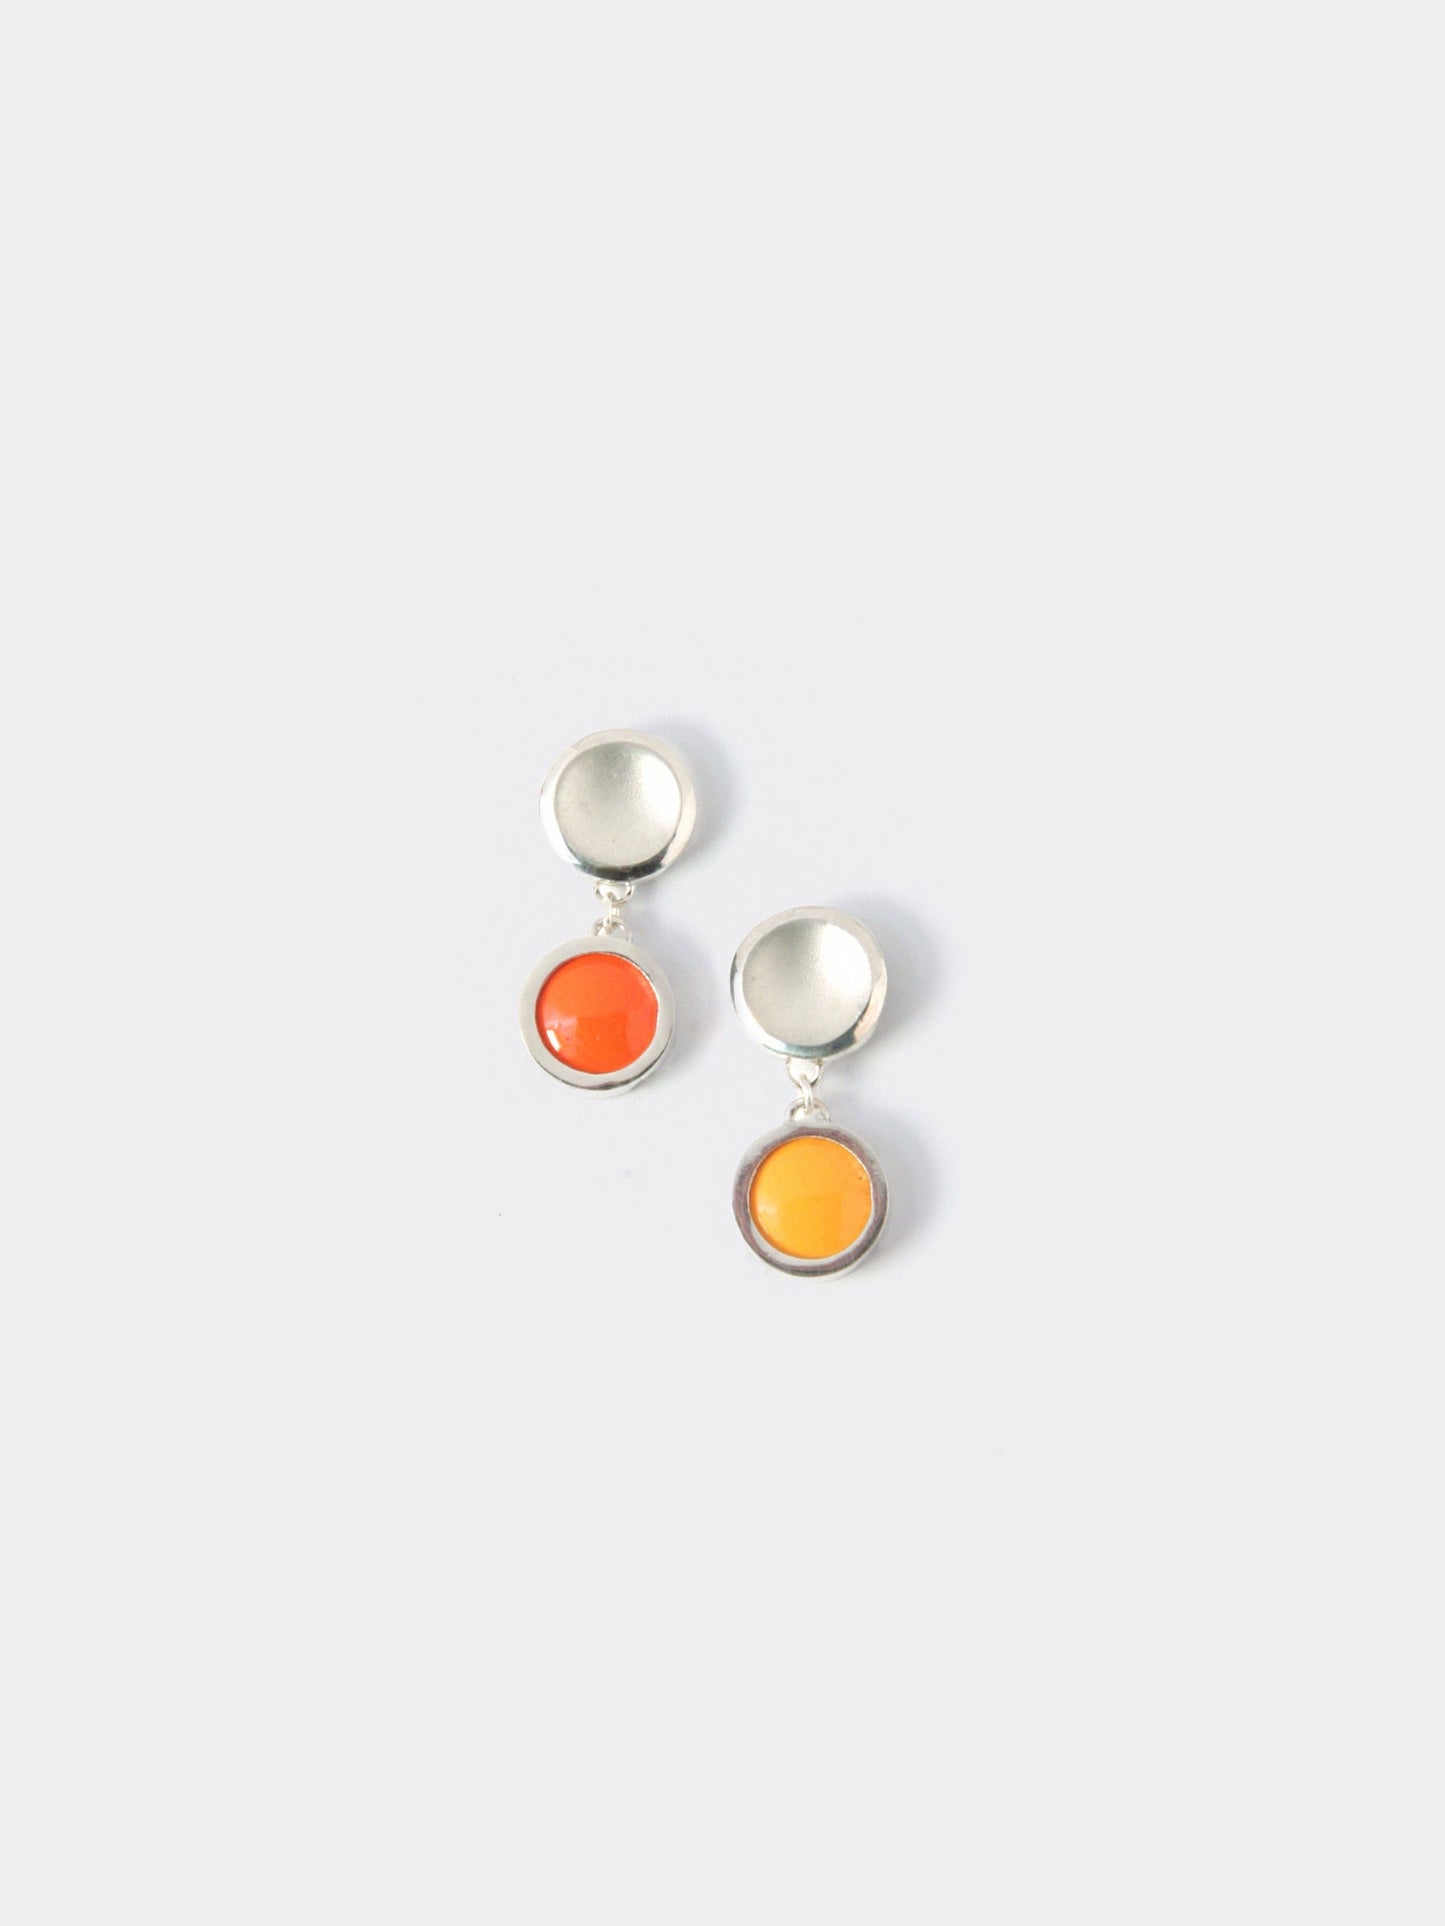 Vitreous Enamel Earring | Everyday Drop Earrings |Sterling Silver Earring  |Orange Dainty Earrings | Asymmetrical Earrings | Minimal Earring